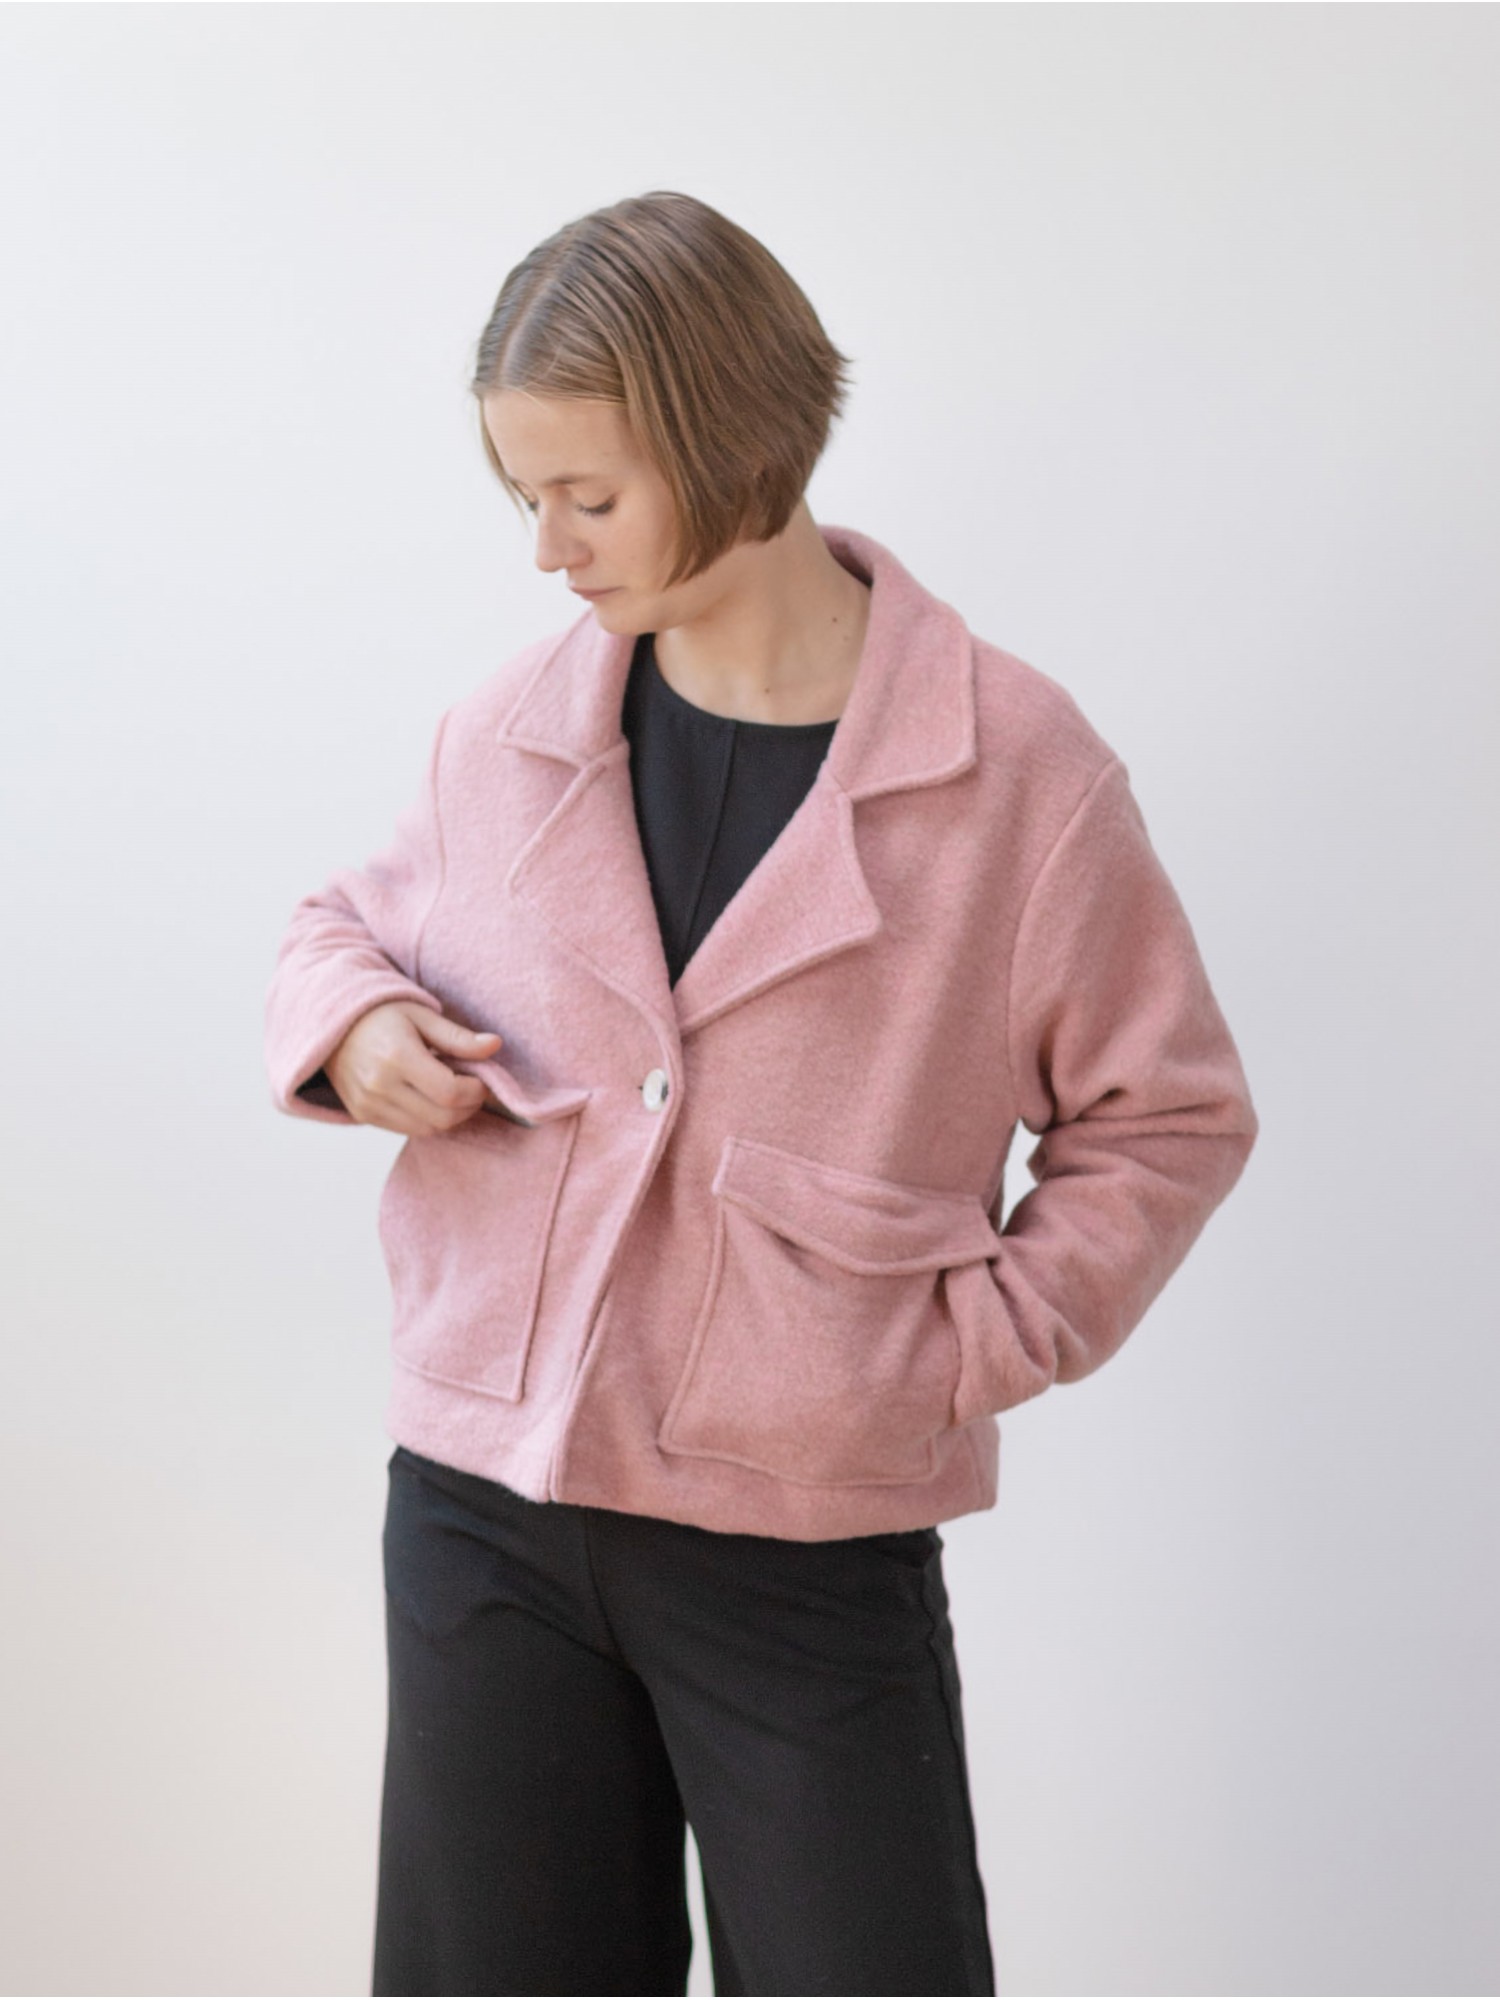 Abrigo corto Cloet. Colección AW23 PAN Producto Básico en candelascloset. Abrigo de mujer en color rosa y oversize.